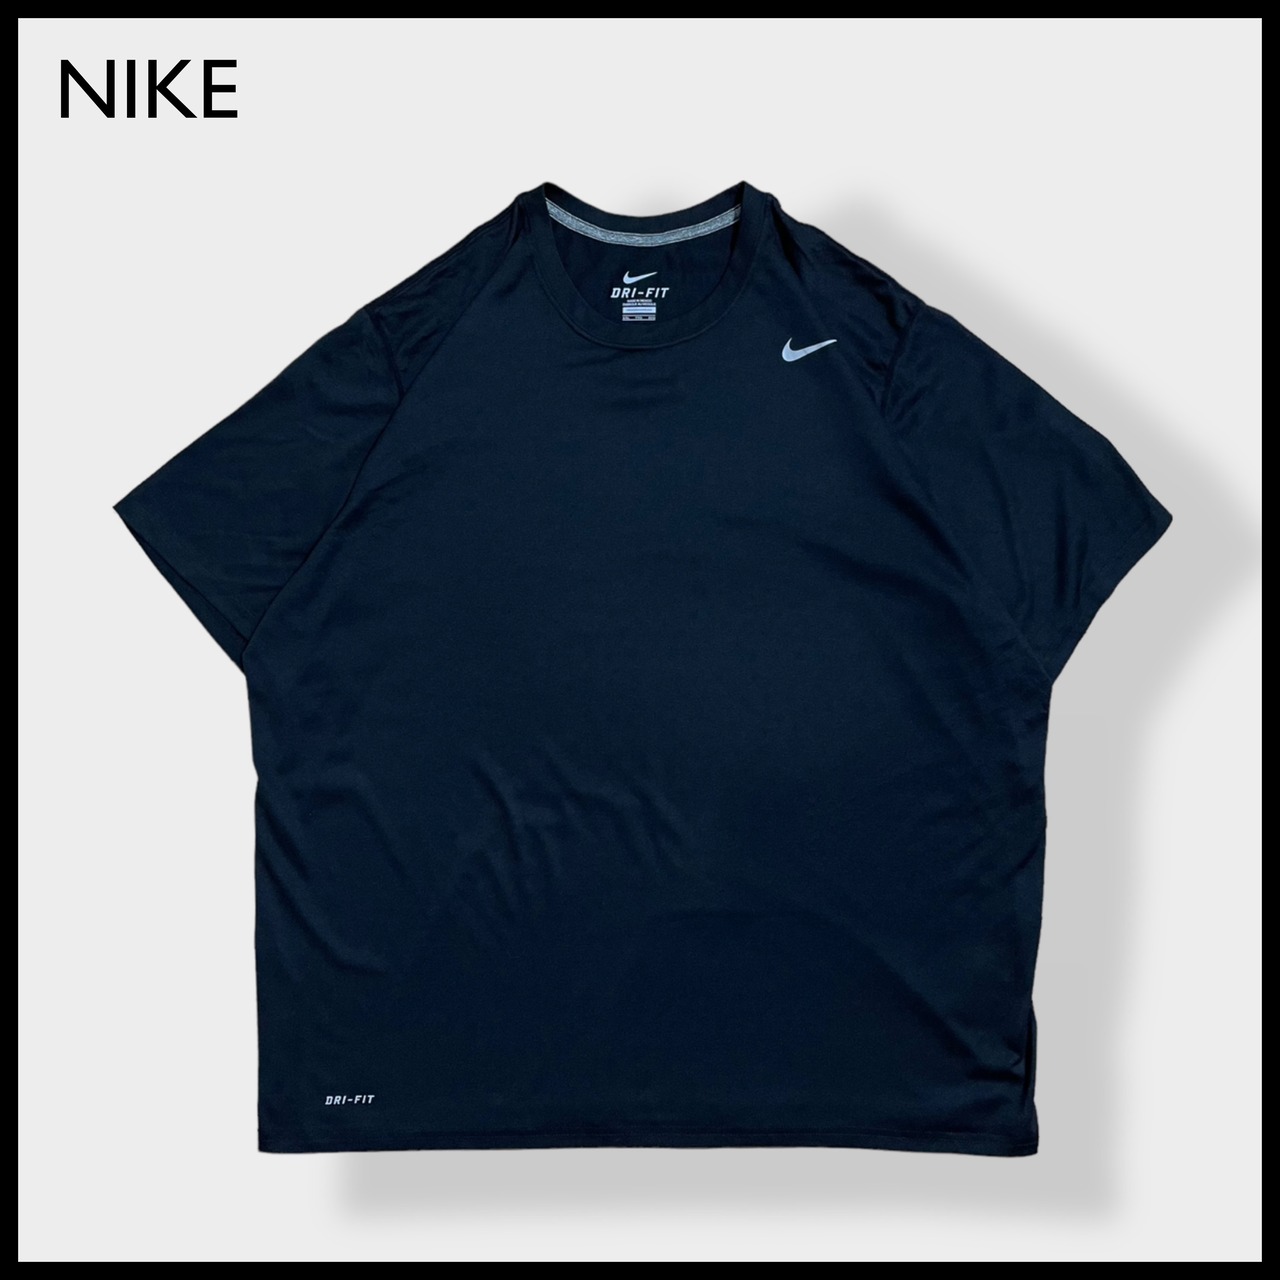 【NIKE】2XL ビッグサイズ Tシャツ スウッシュ ワンポイントロゴ  ポリエステル DRI-FIT ドライフィット 半袖 黒 メキシコ製 MEXICO US古着